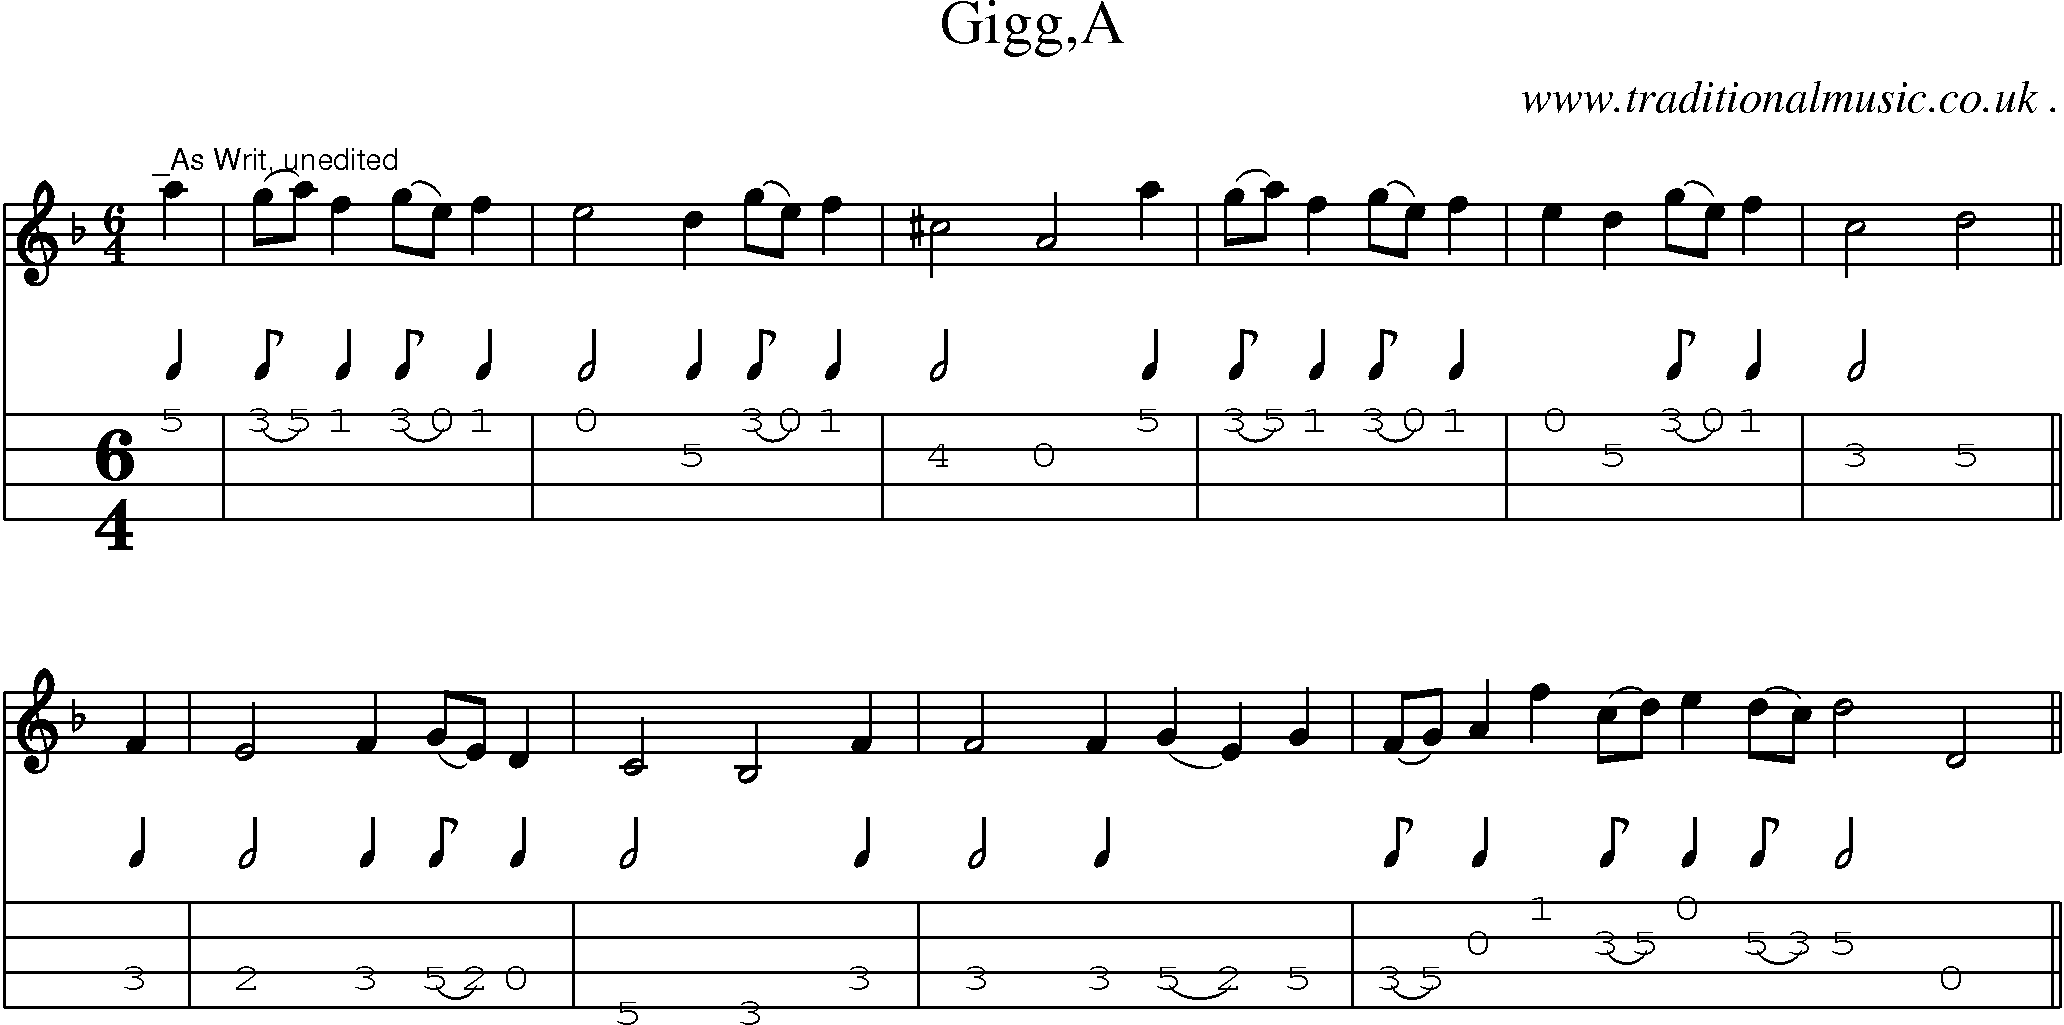 Sheet-Music and Mandolin Tabs for Gigga